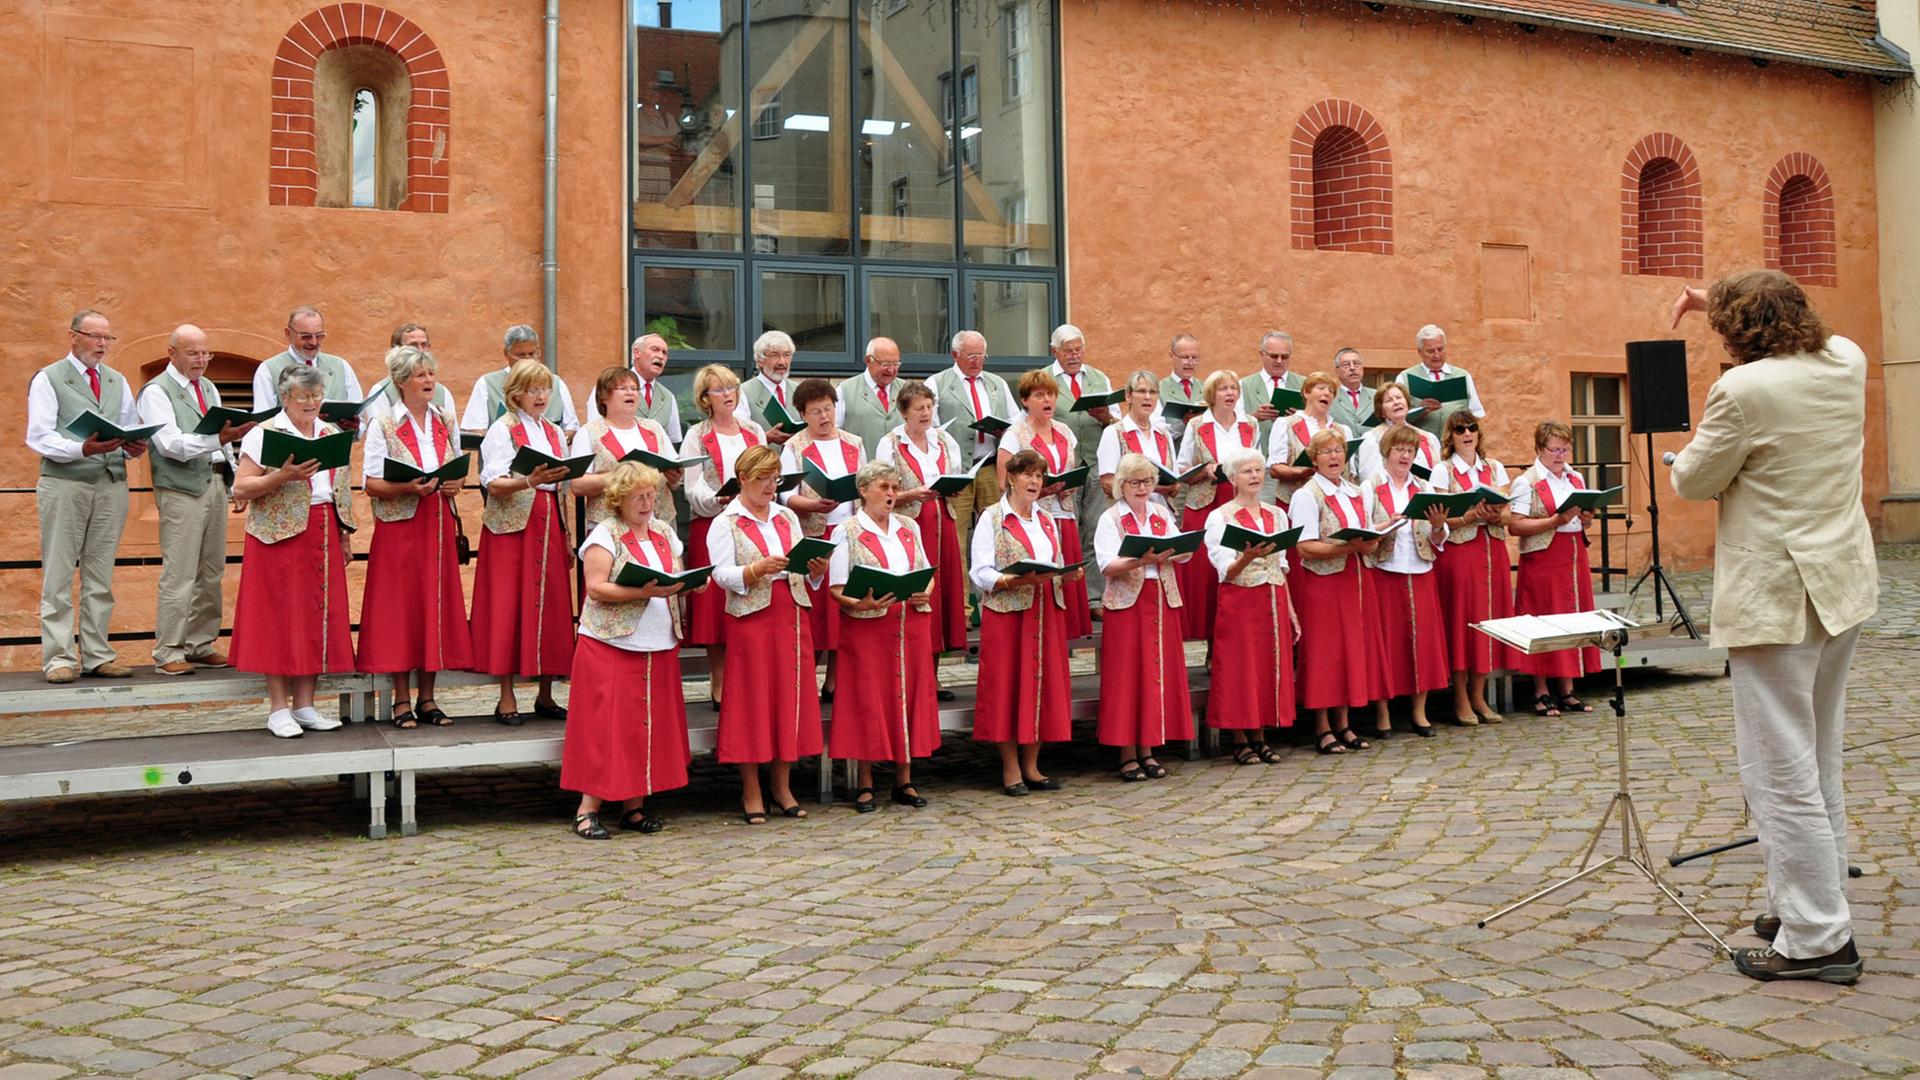 Der Winzerchor Spaargebirge aus Meißen singt hier im Klosterhof von Riesa, Juni 2014.